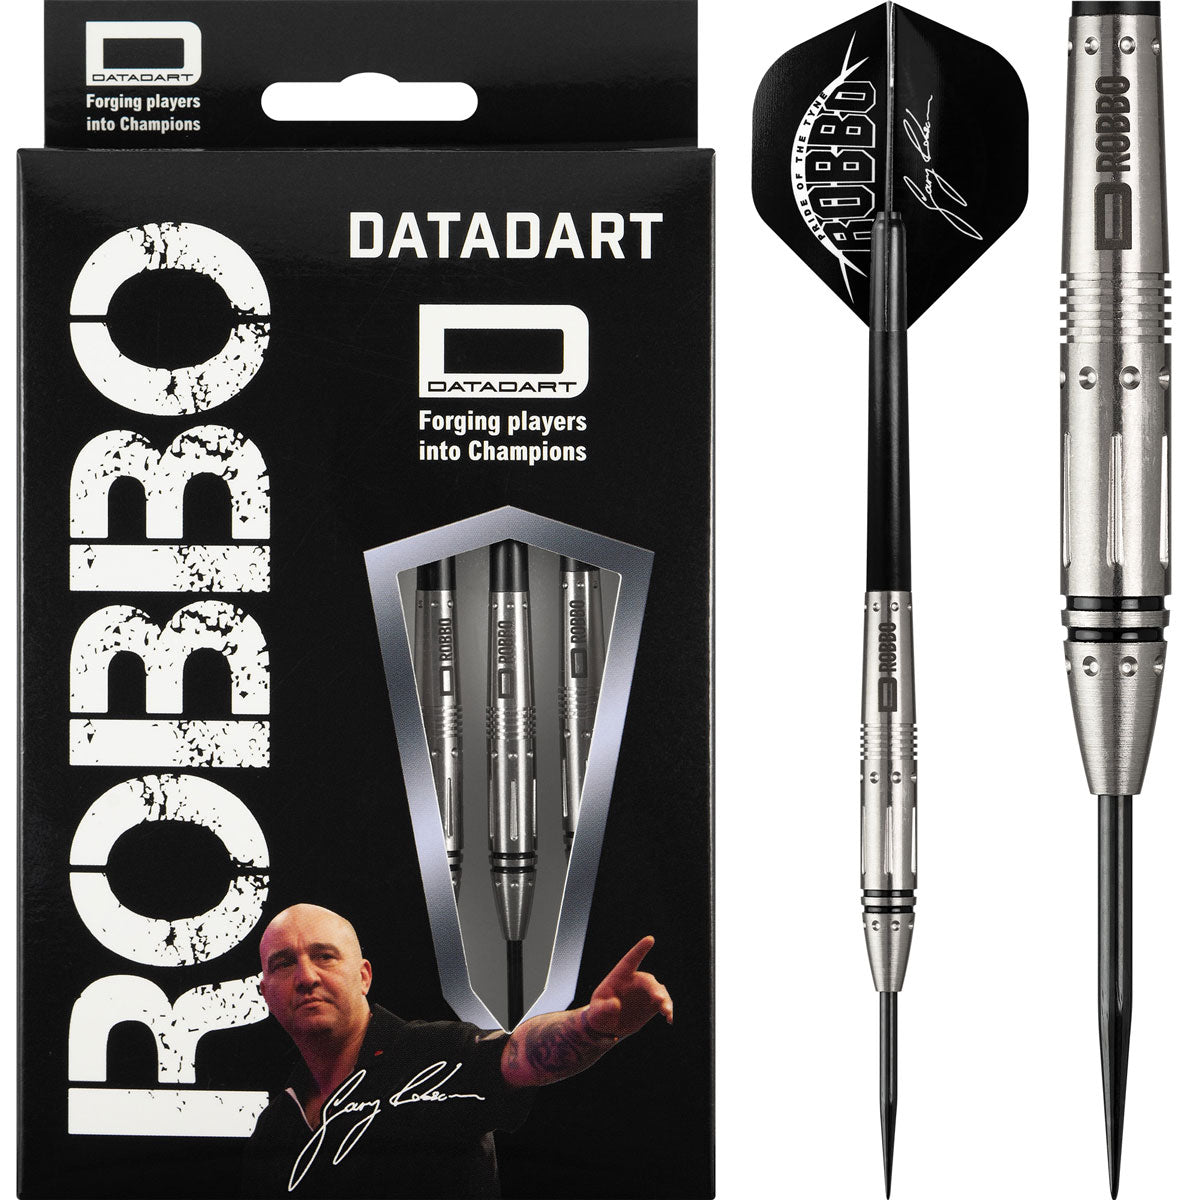 Datadart Gary Robson MK3 Robbo Grip Darts 24g - 80% Tungsten